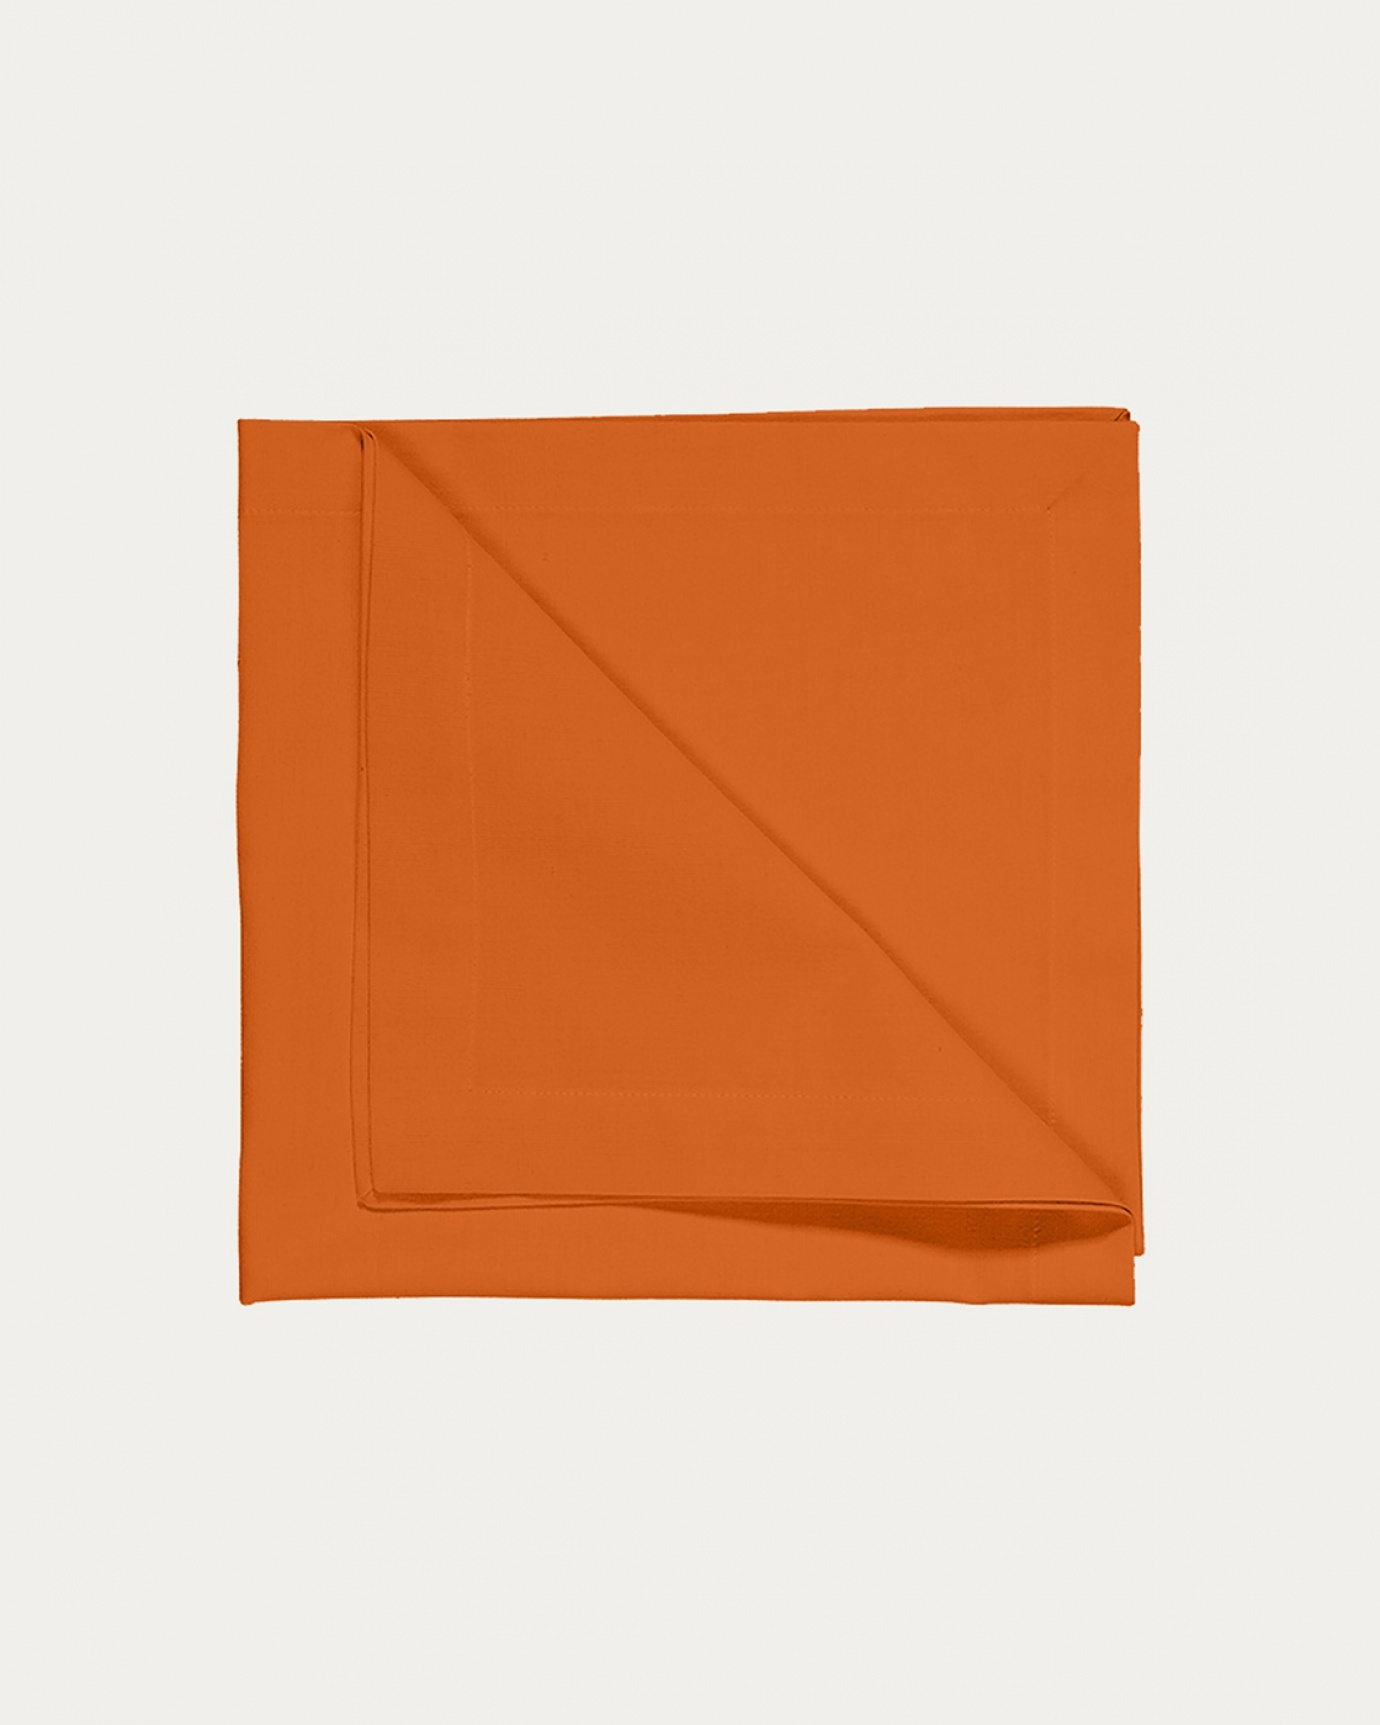 Produktbild orange ROBERT Serviette aus weicher Baumwolle von LINUM DESIGN. Größe 45x45 cm und in 4er-Pack verkauft.